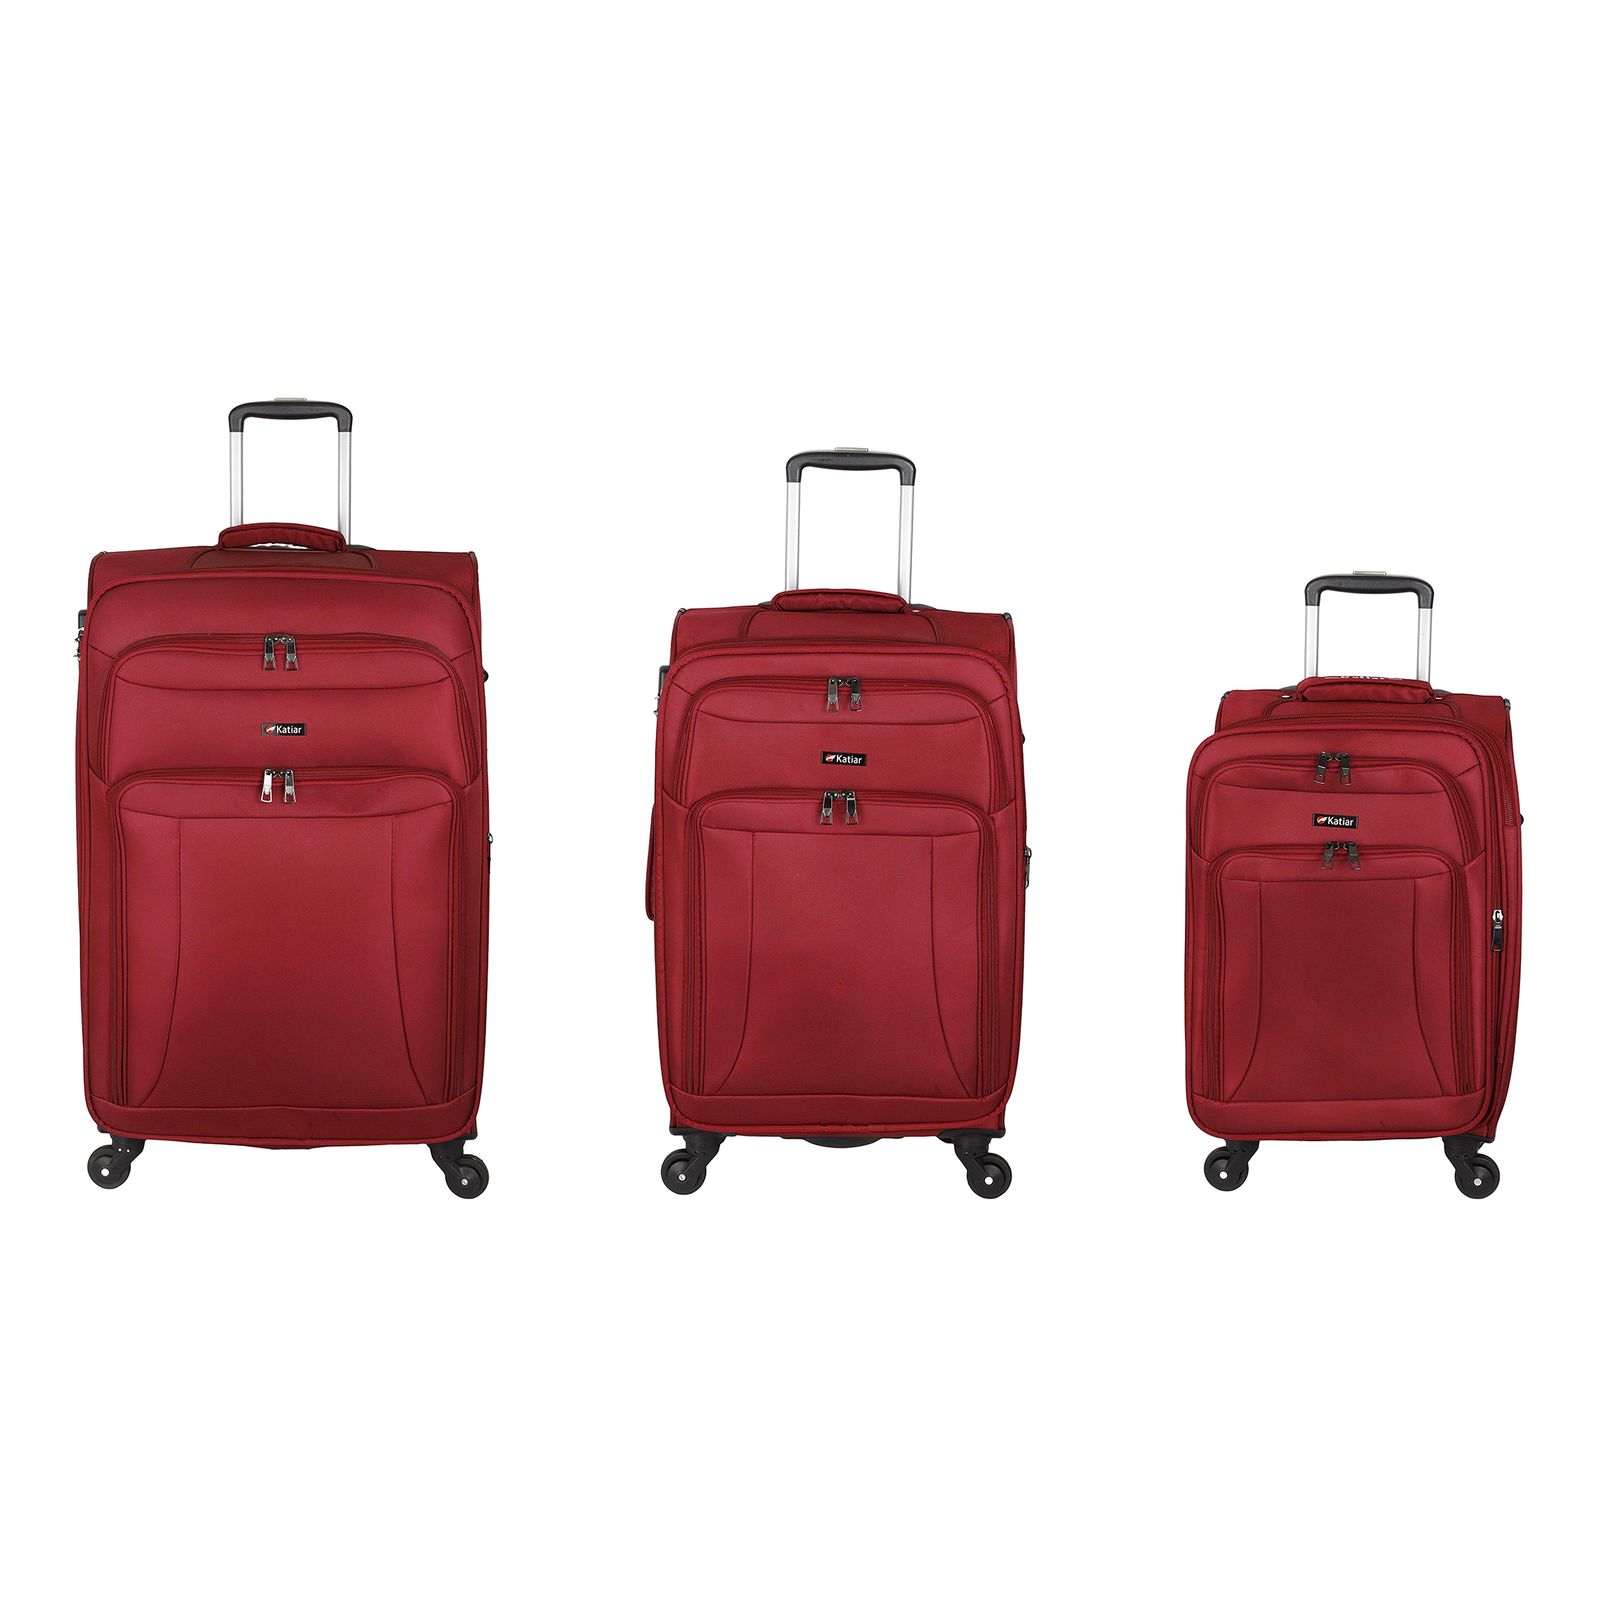 مجموعه سه عددی چمدان کاتیار مدل 233 -  - 1